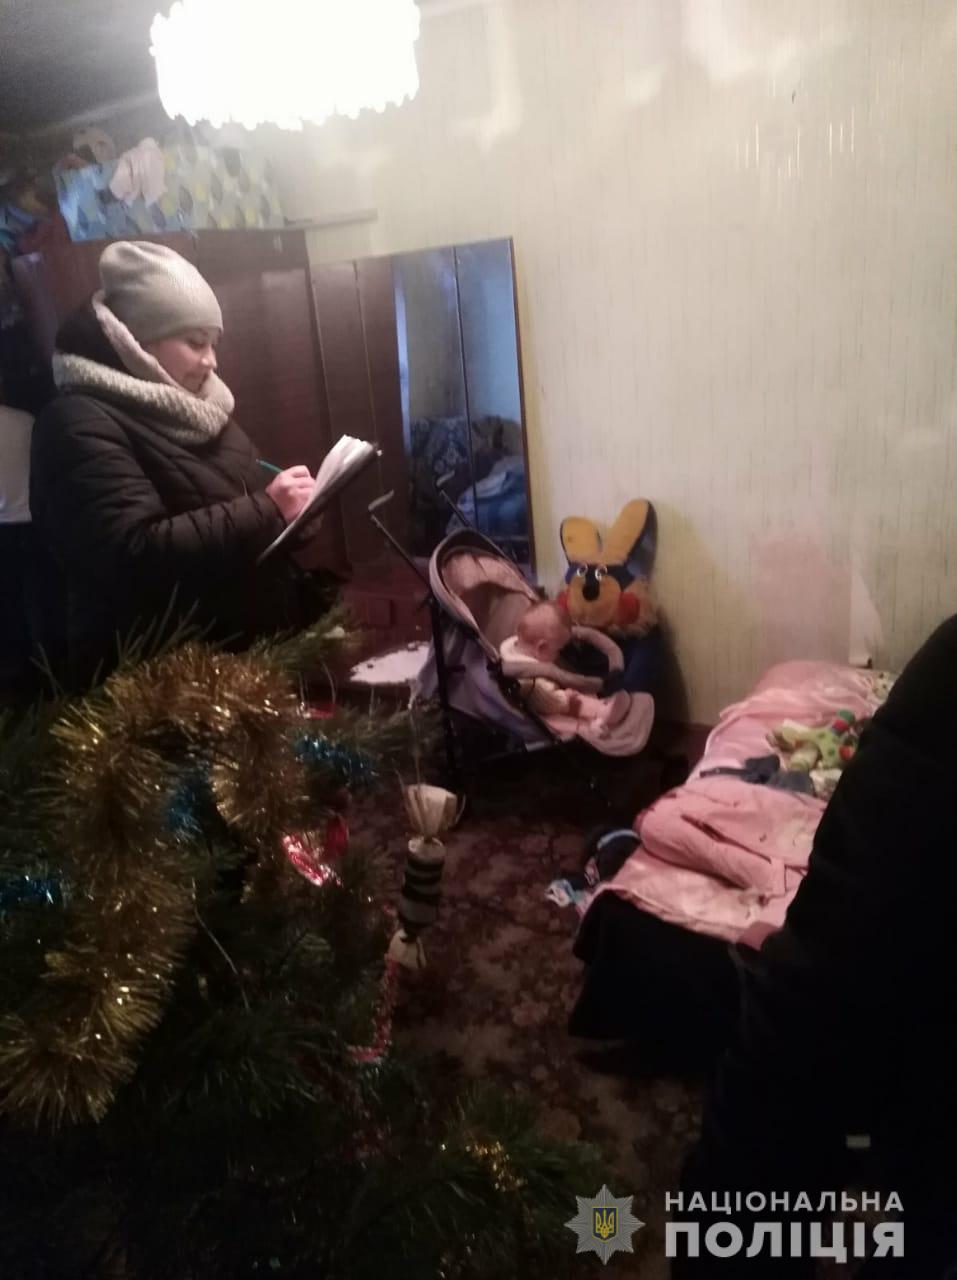 На Киевщине несколько маленьких детей попали в ужасную беду